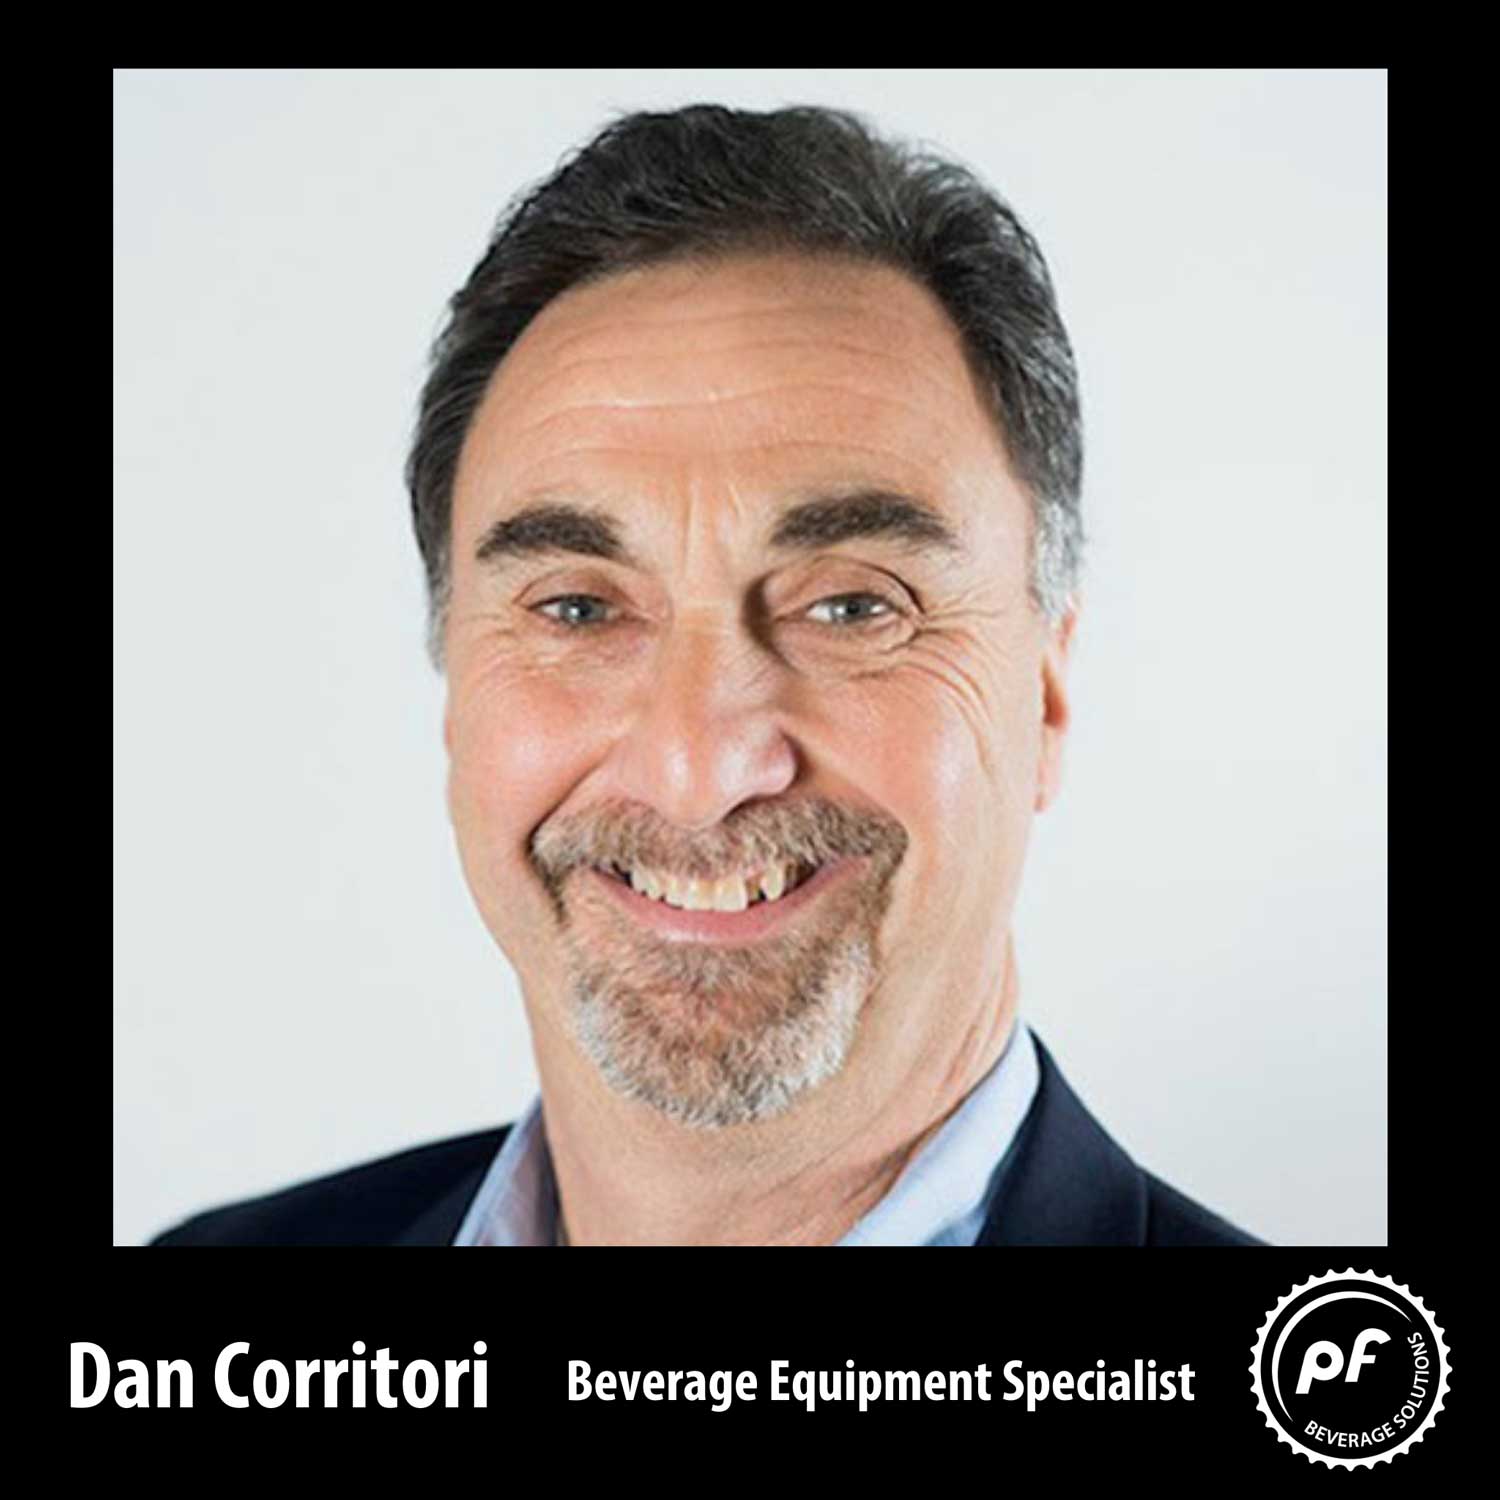 Dan Corritori, Beverage Equipment Specialist